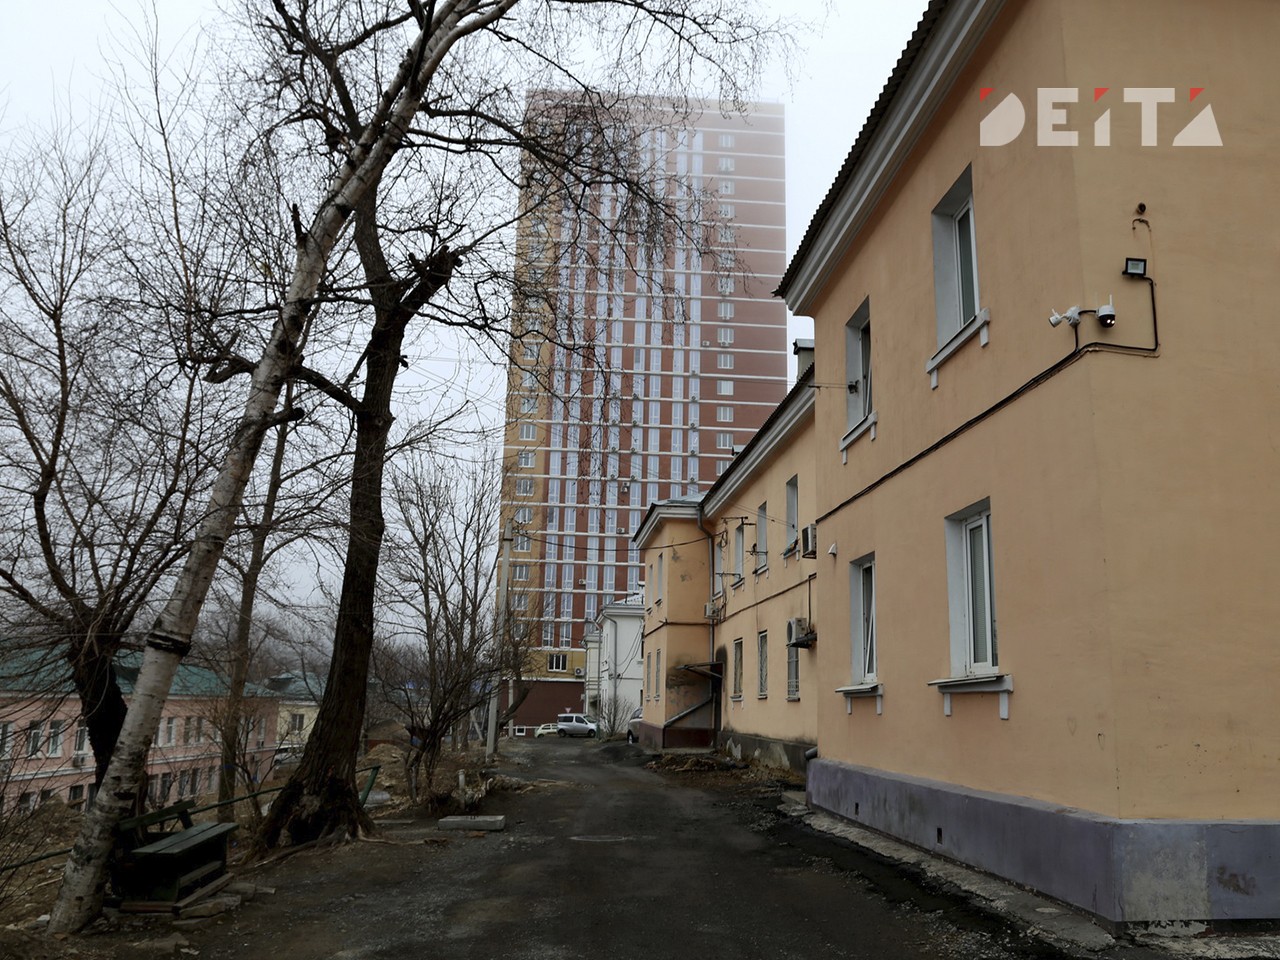 Снести или оставить: судьбу жильцов целой улицы решают во Владивостоке